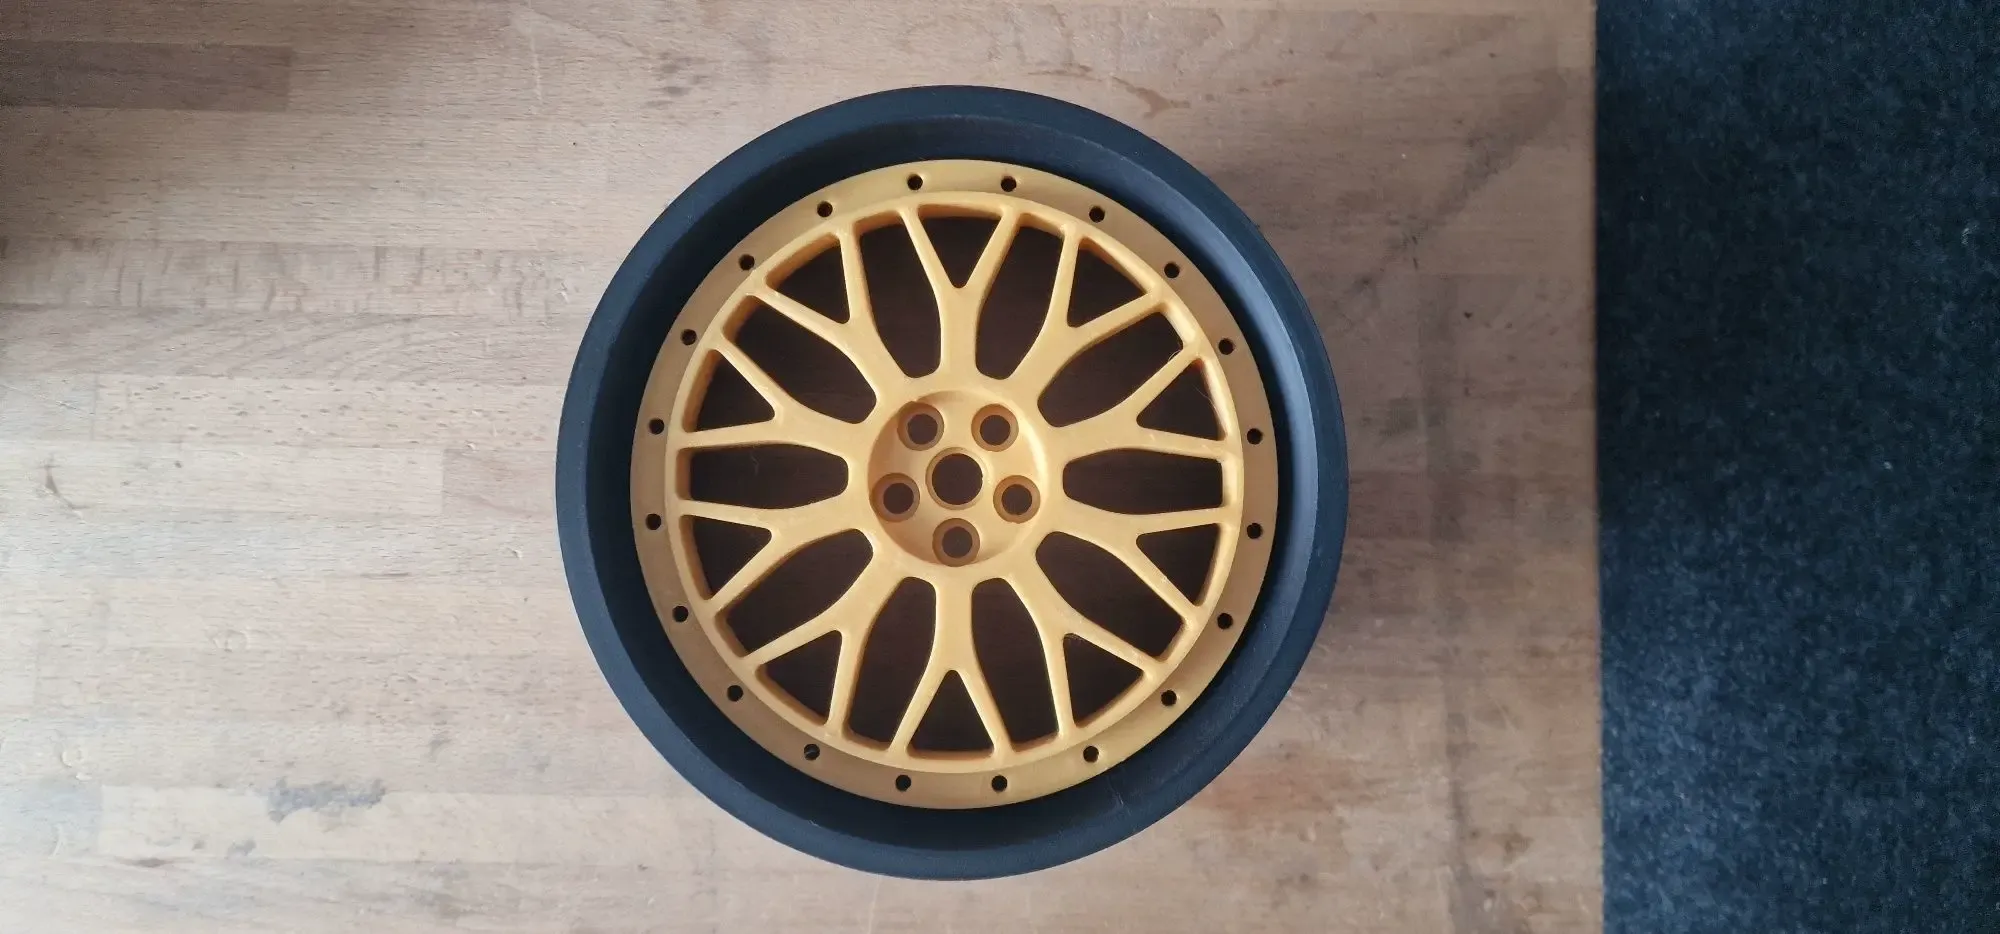 BBS Le Mans Wheel Design Star for 200mm diameter Wheel Kit